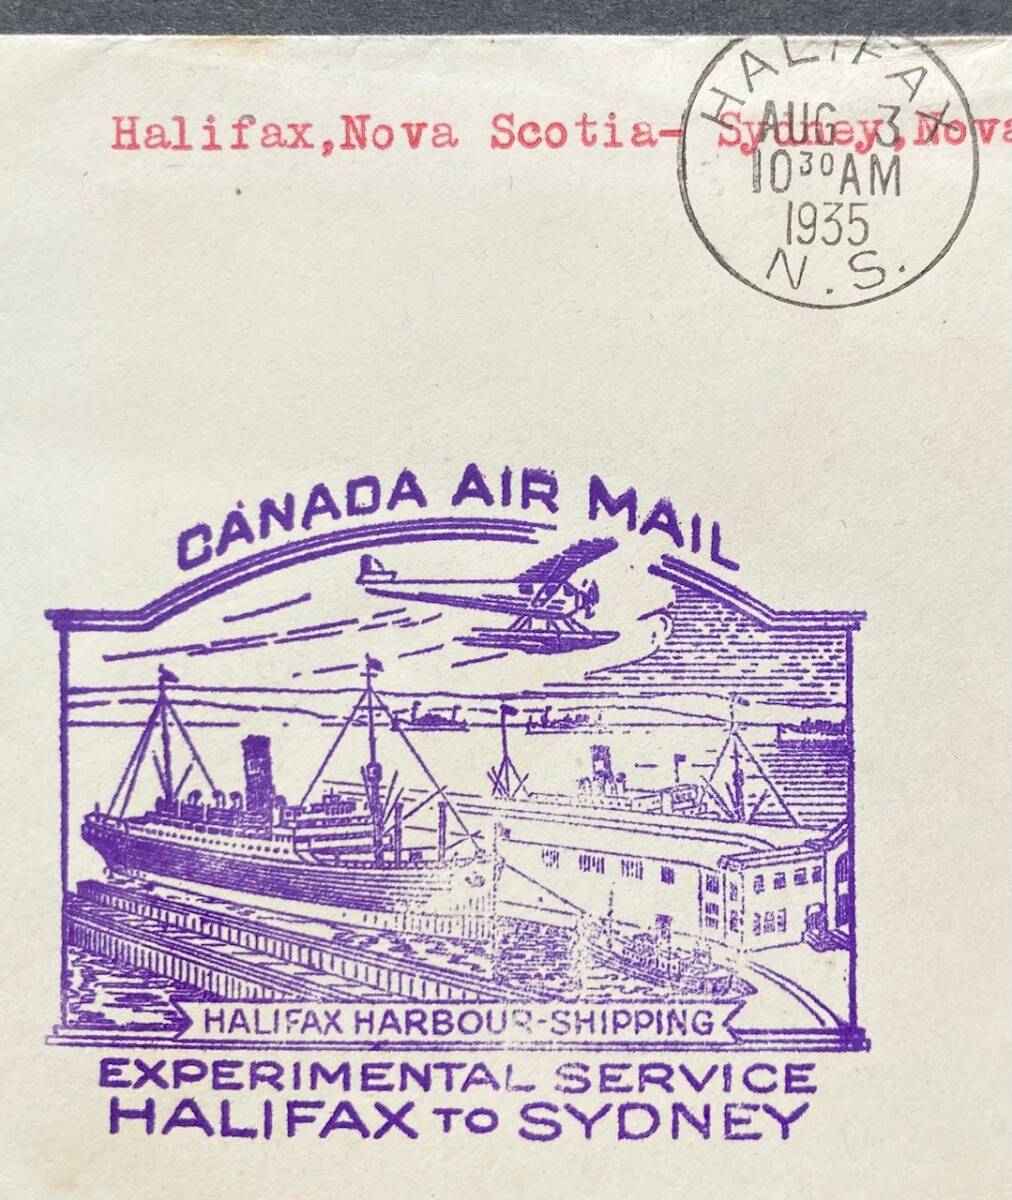 [ Canada ]1935 год FFC~HALIFAX-SYDNEY(no автобус kosia) хорошая вещь * экзамен полет рейс резина печать kashe вдавлено ~ водный самолет дизайн хорошая вещь 